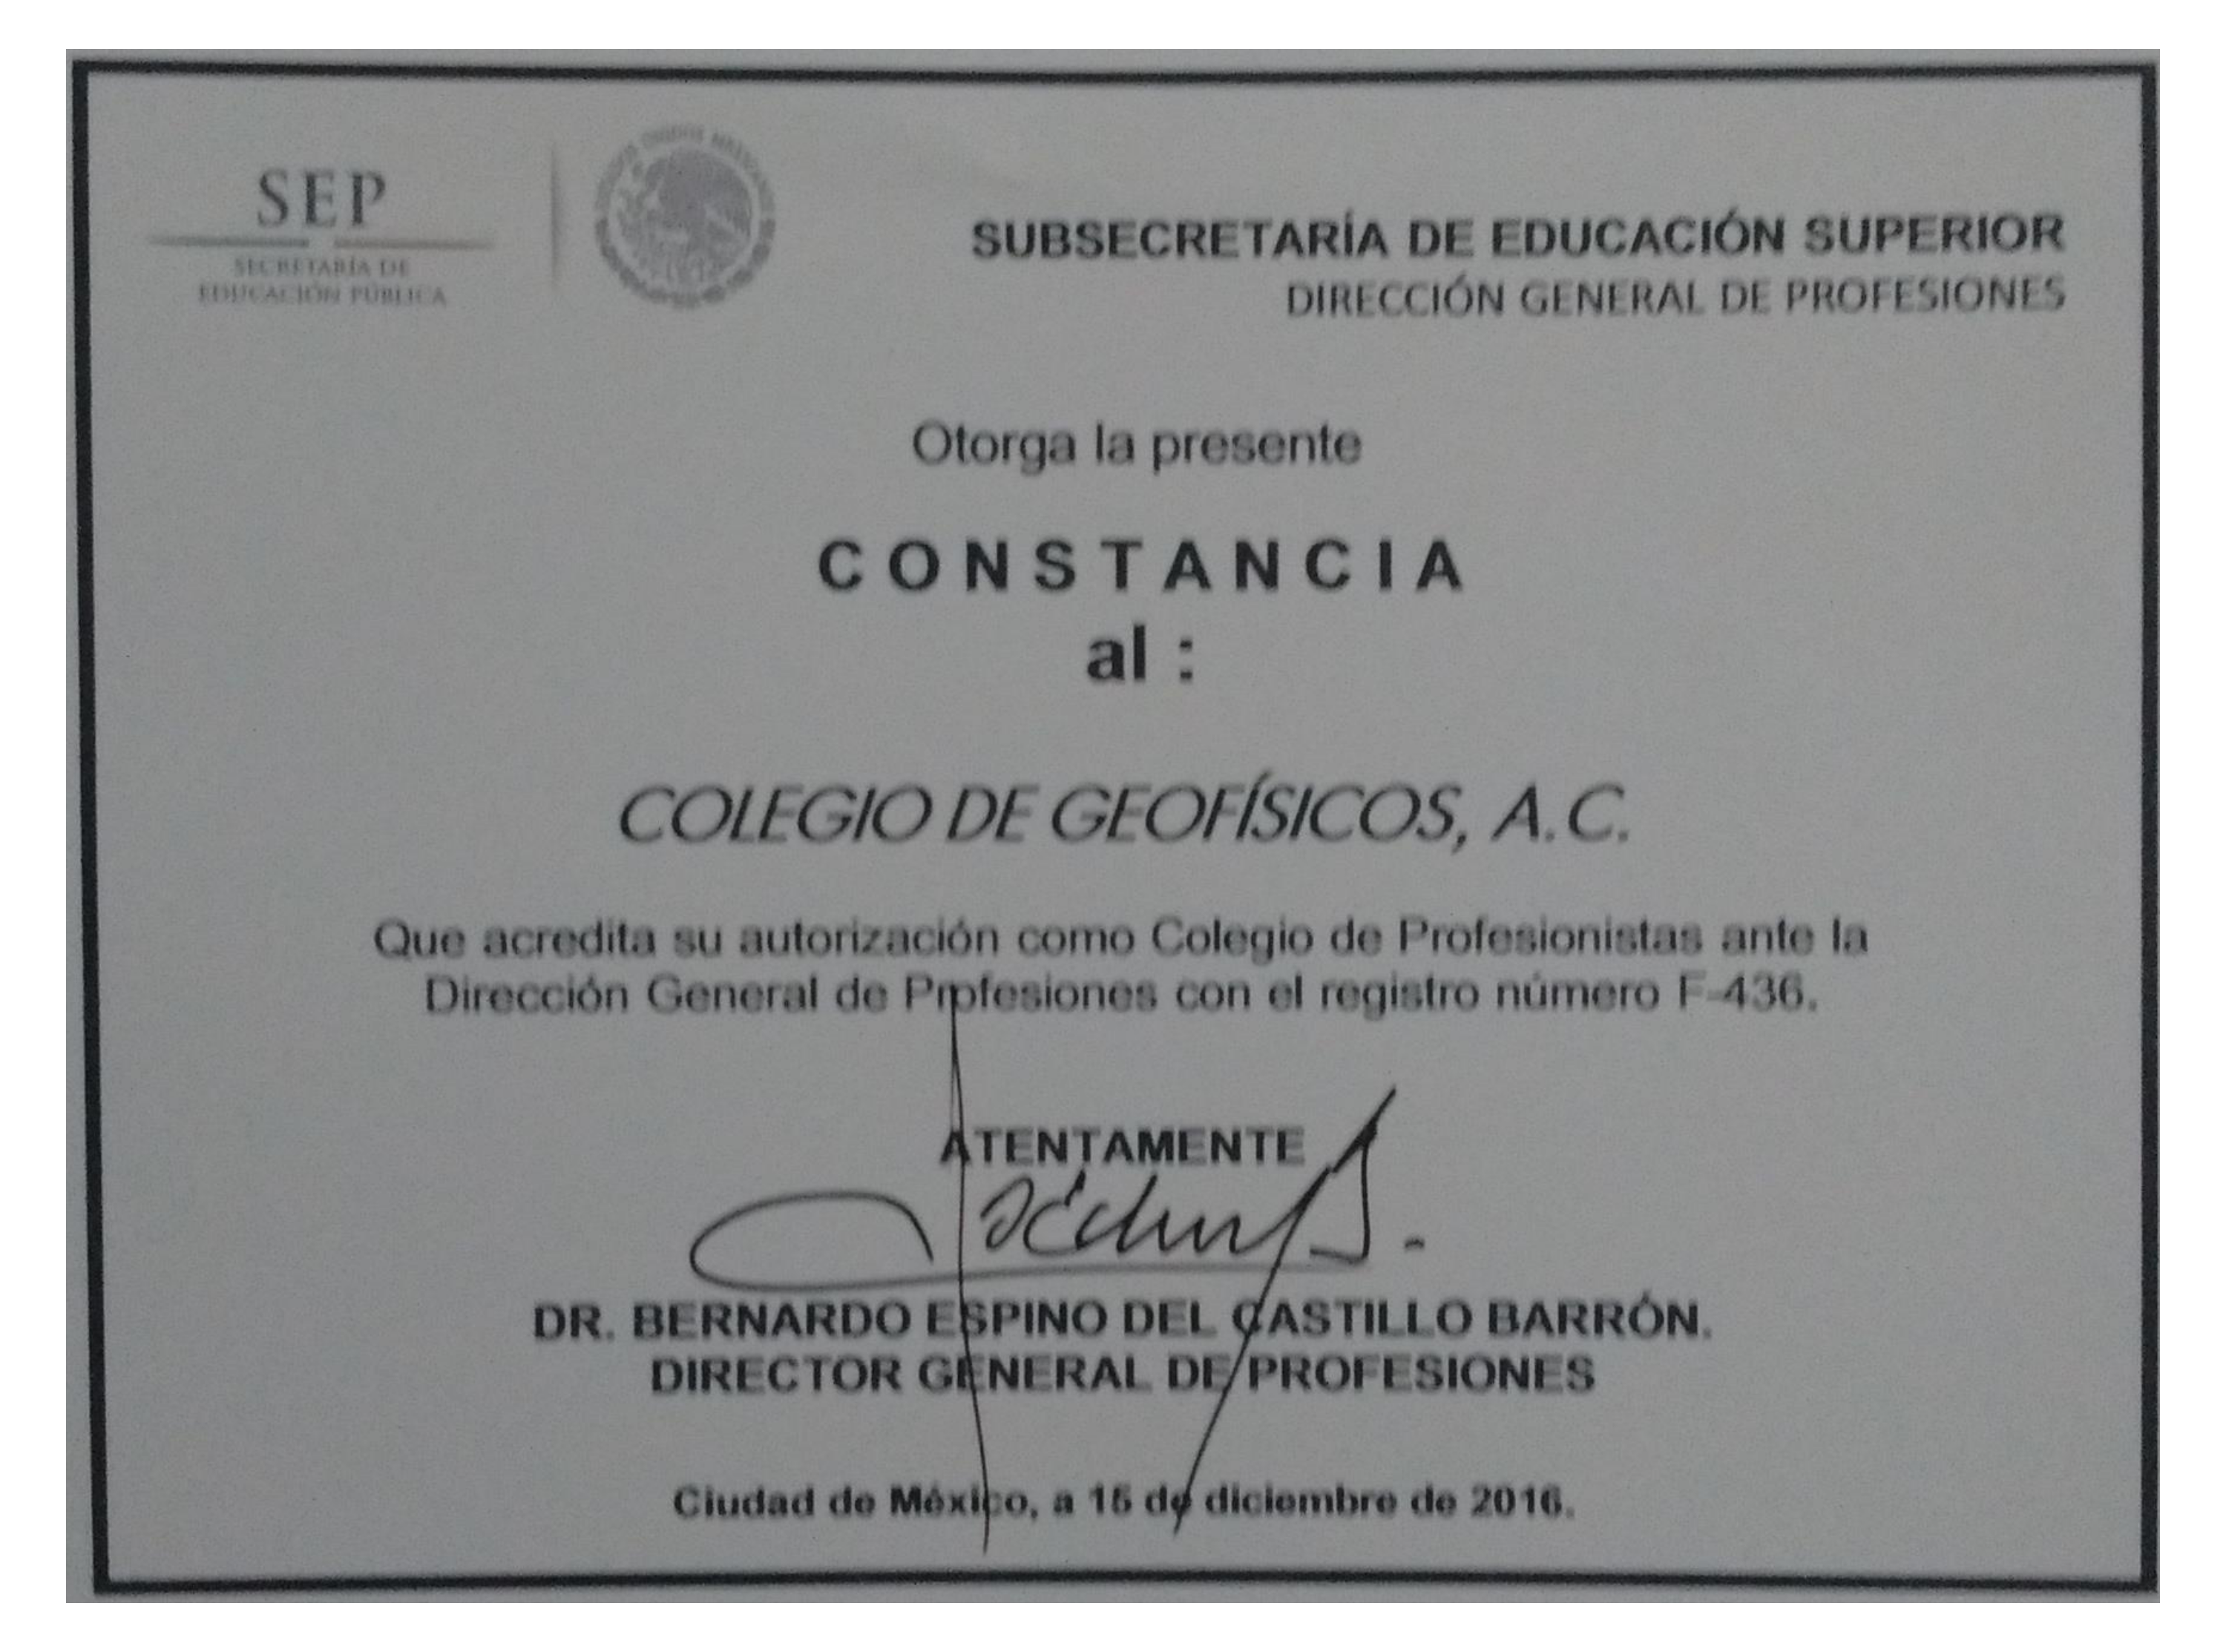 Registro del Colegio de Geofísicos, A.C. ente la SEP: